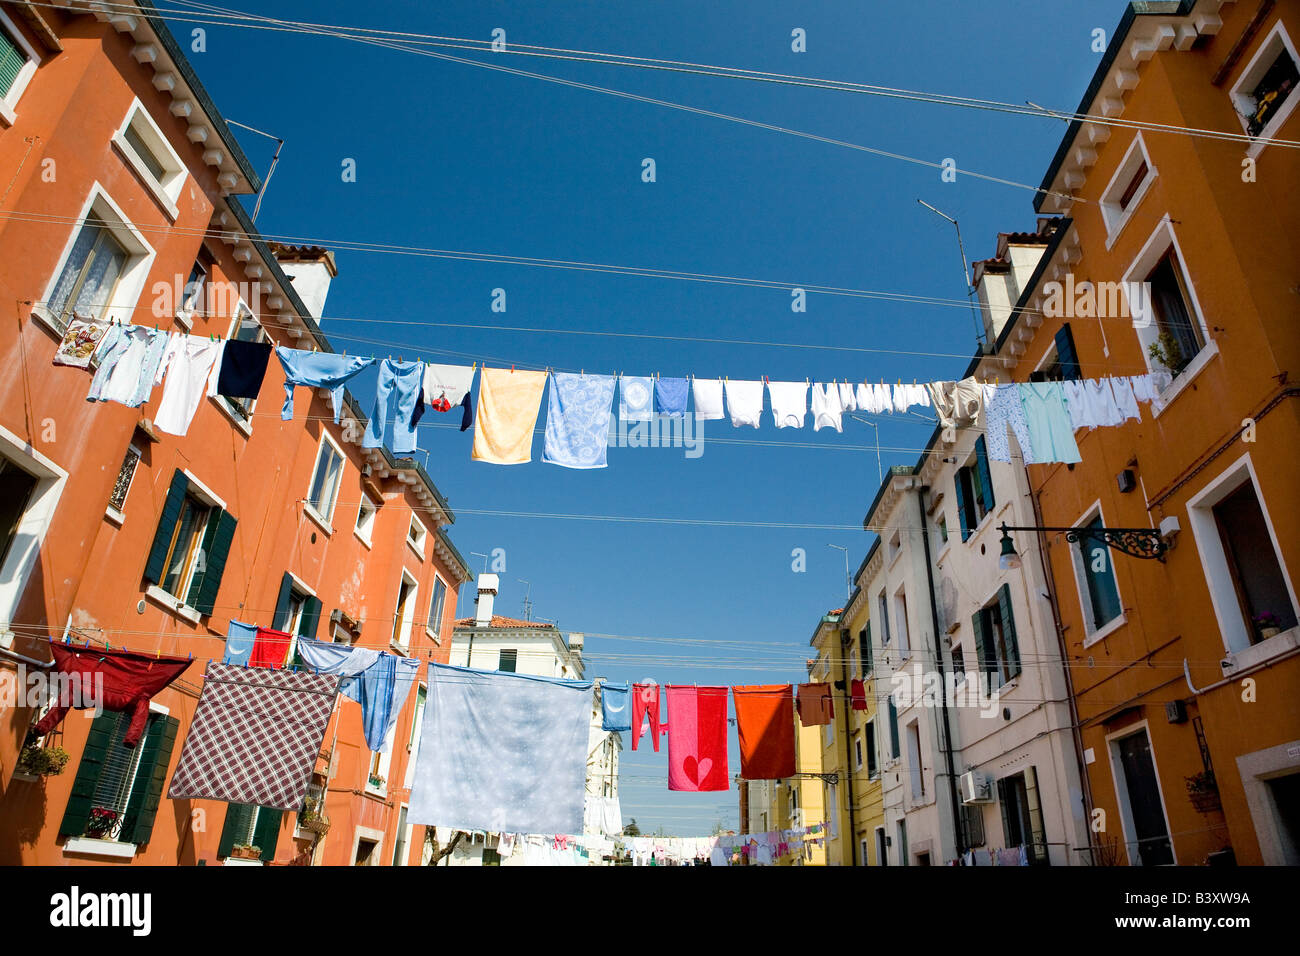 Waschen Trocknen im Stadtteil Castello Venedig Italien Stockfoto